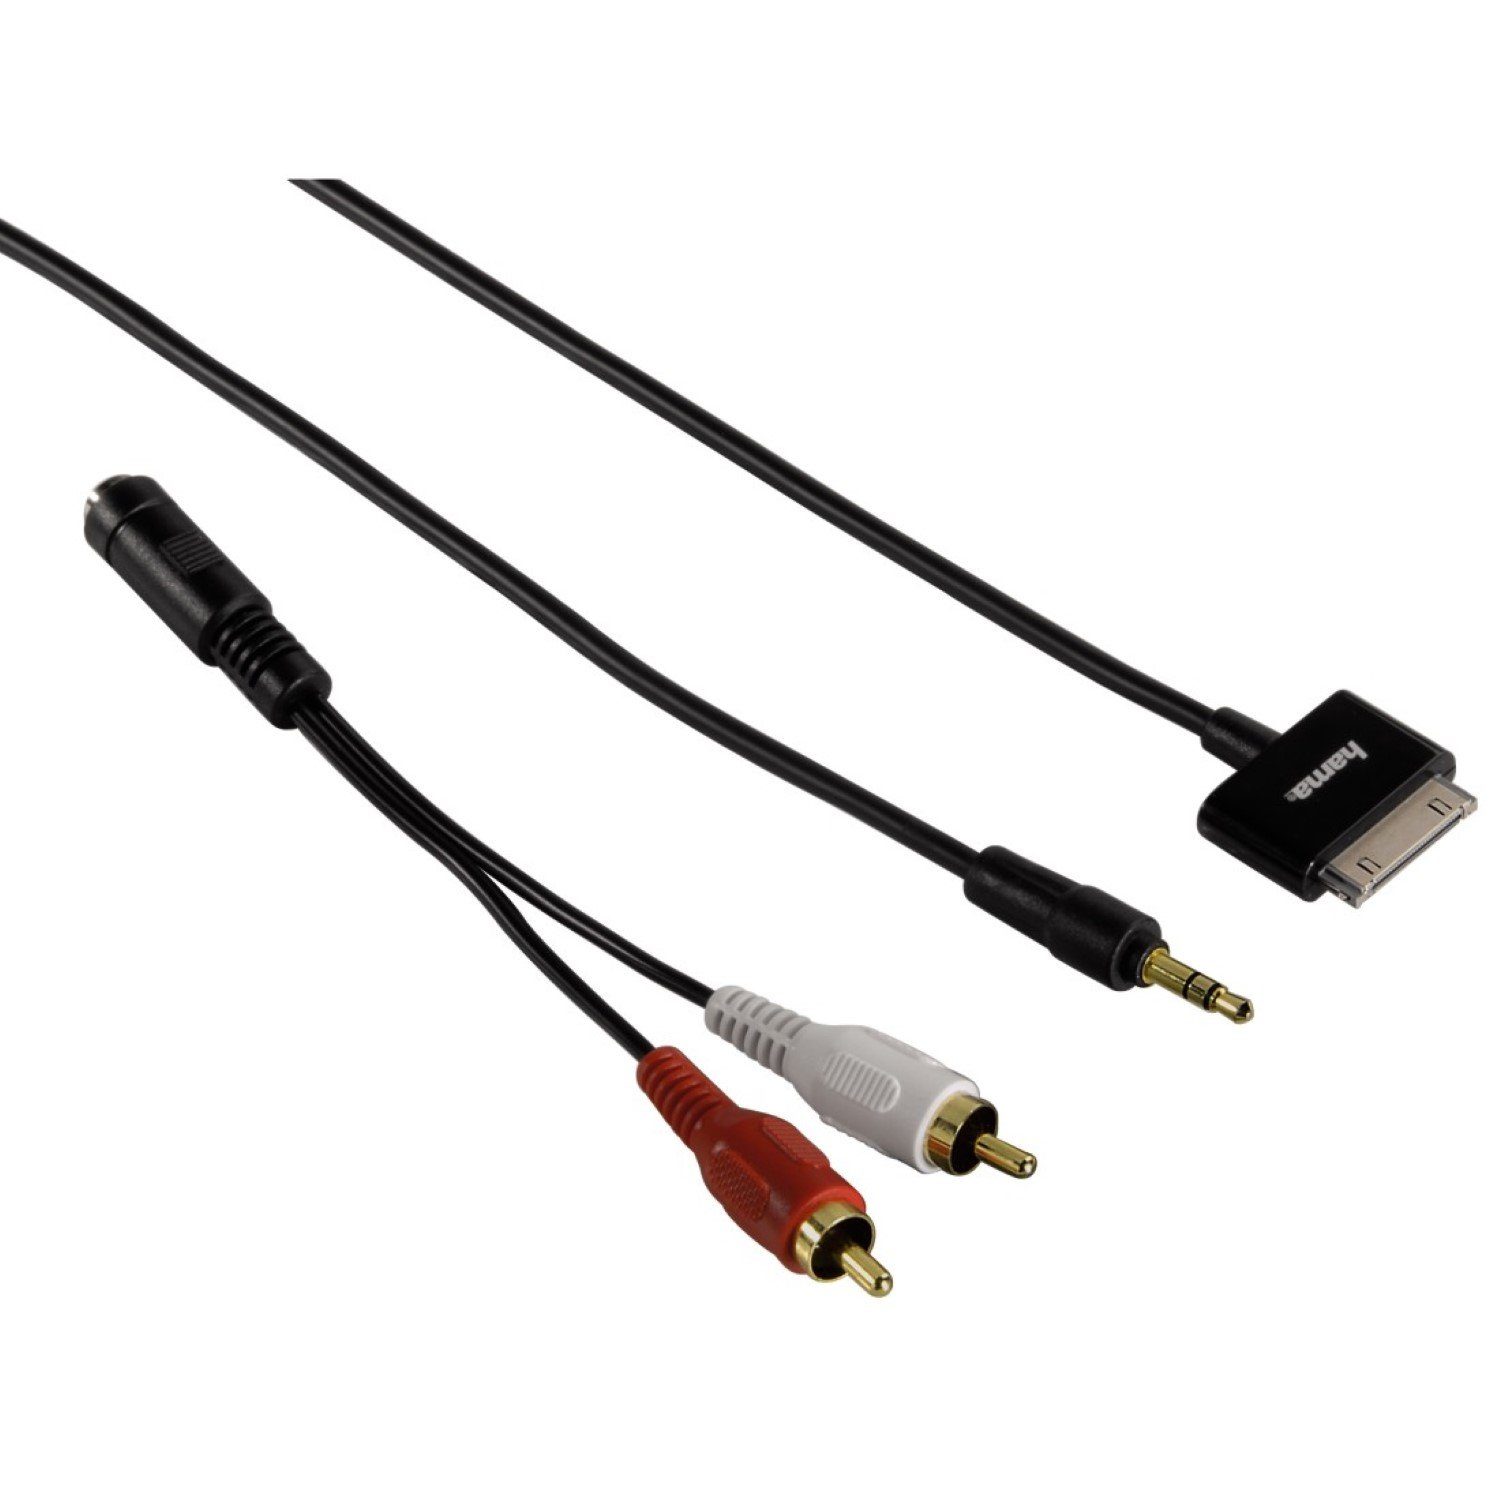 Hama Audio-Kabel Adapter AUX 3,5mm Klinke > 30-Pin Audio-Kabel, Cinch,  3,5-mm-Klinke (50 cm), Apple 30Pin Dock-Connector auf 3,5mm Klinken-Stecker  oder 2x RCA Cinch-Stecker, passend für iPod, iPhone oder iPad an HiFi Anlage